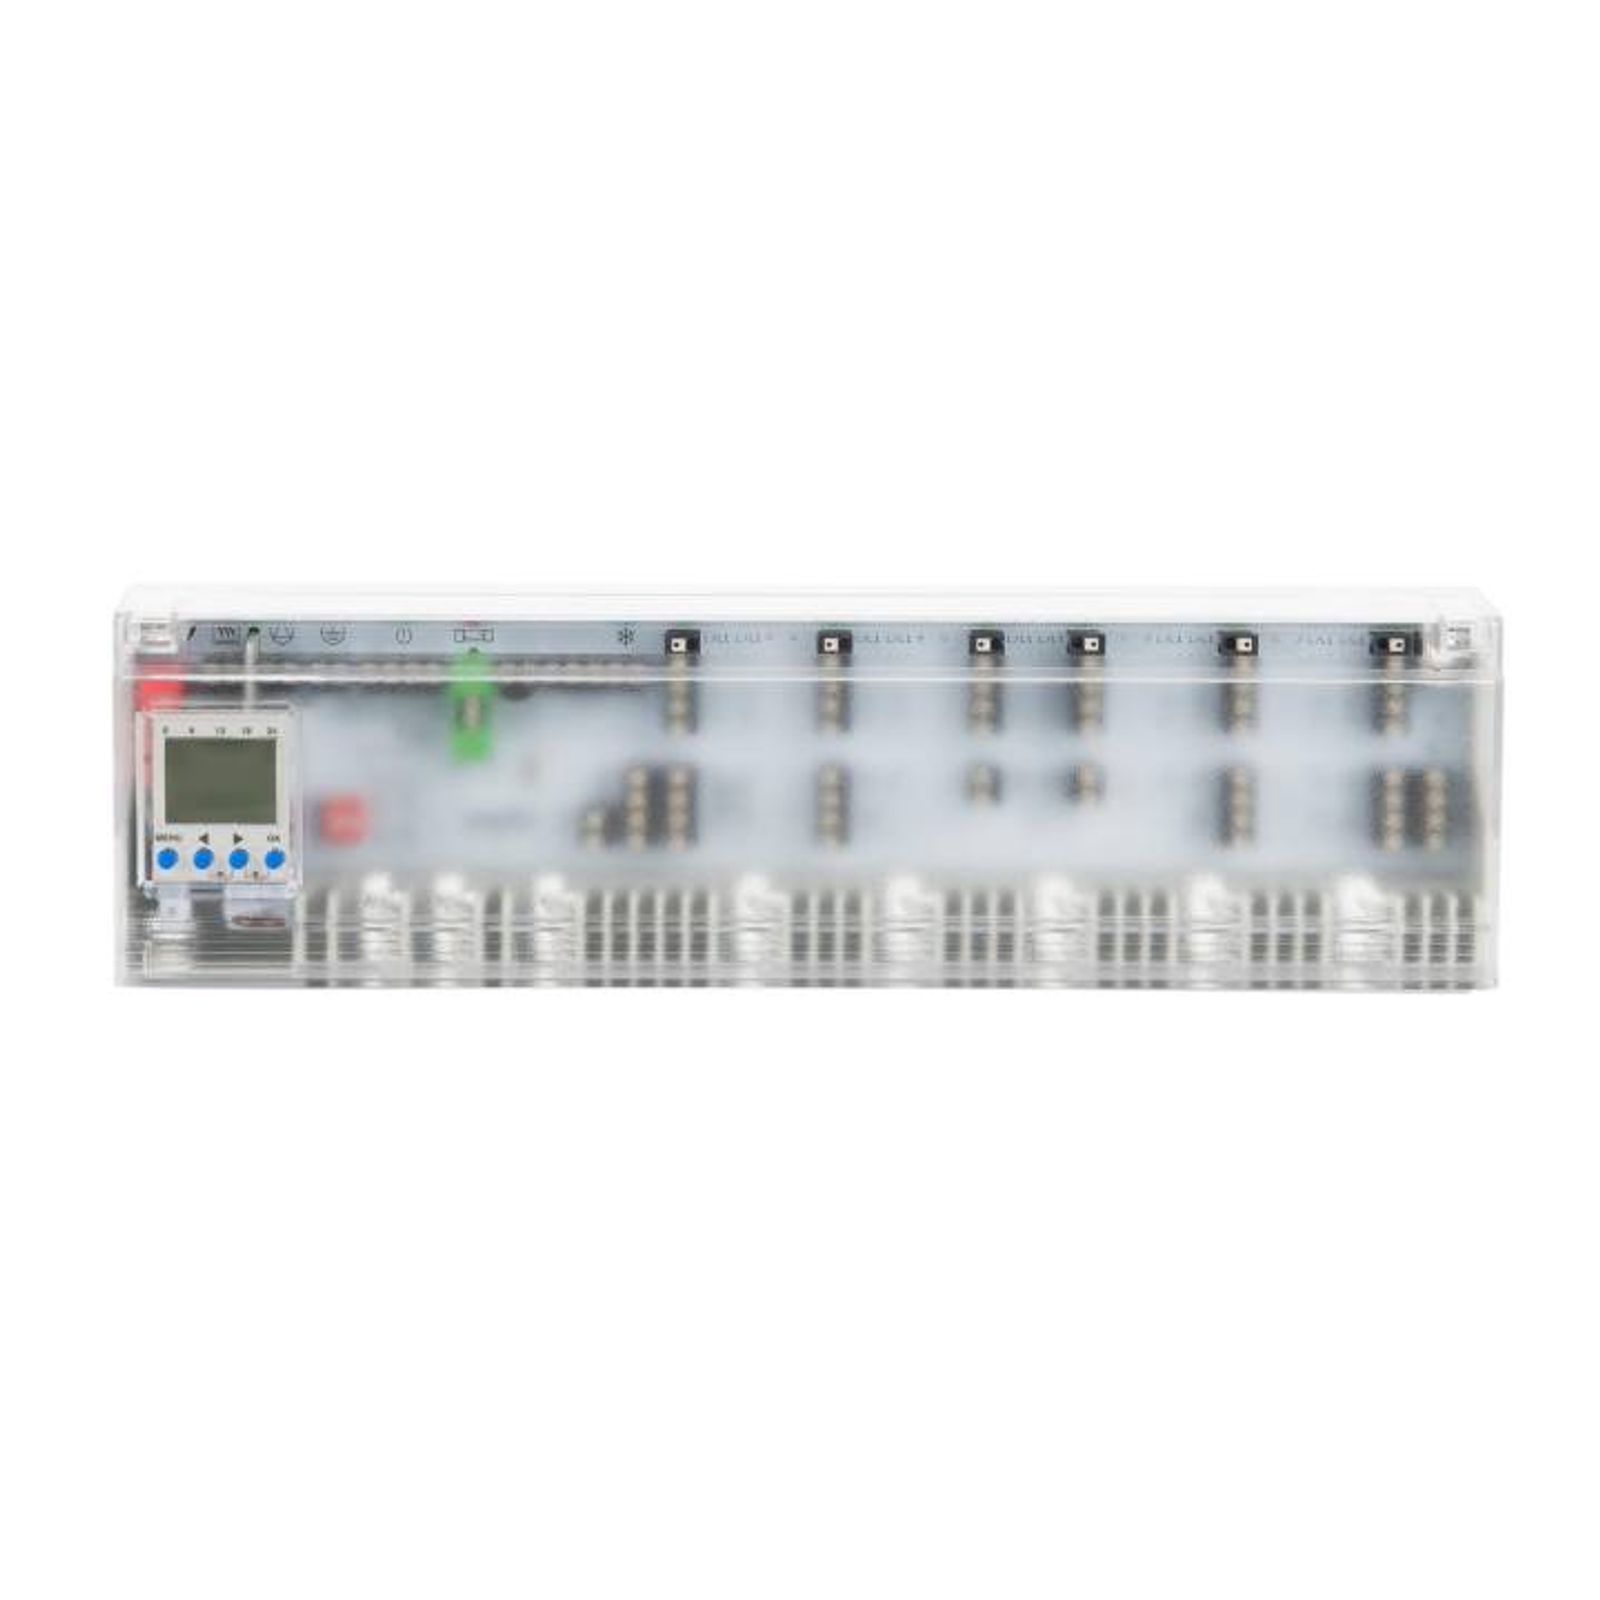 Möhlenhoff Anschlussleiste Alpha Basis direct Control 230 V für 6 Heiz- und Kühlzonen